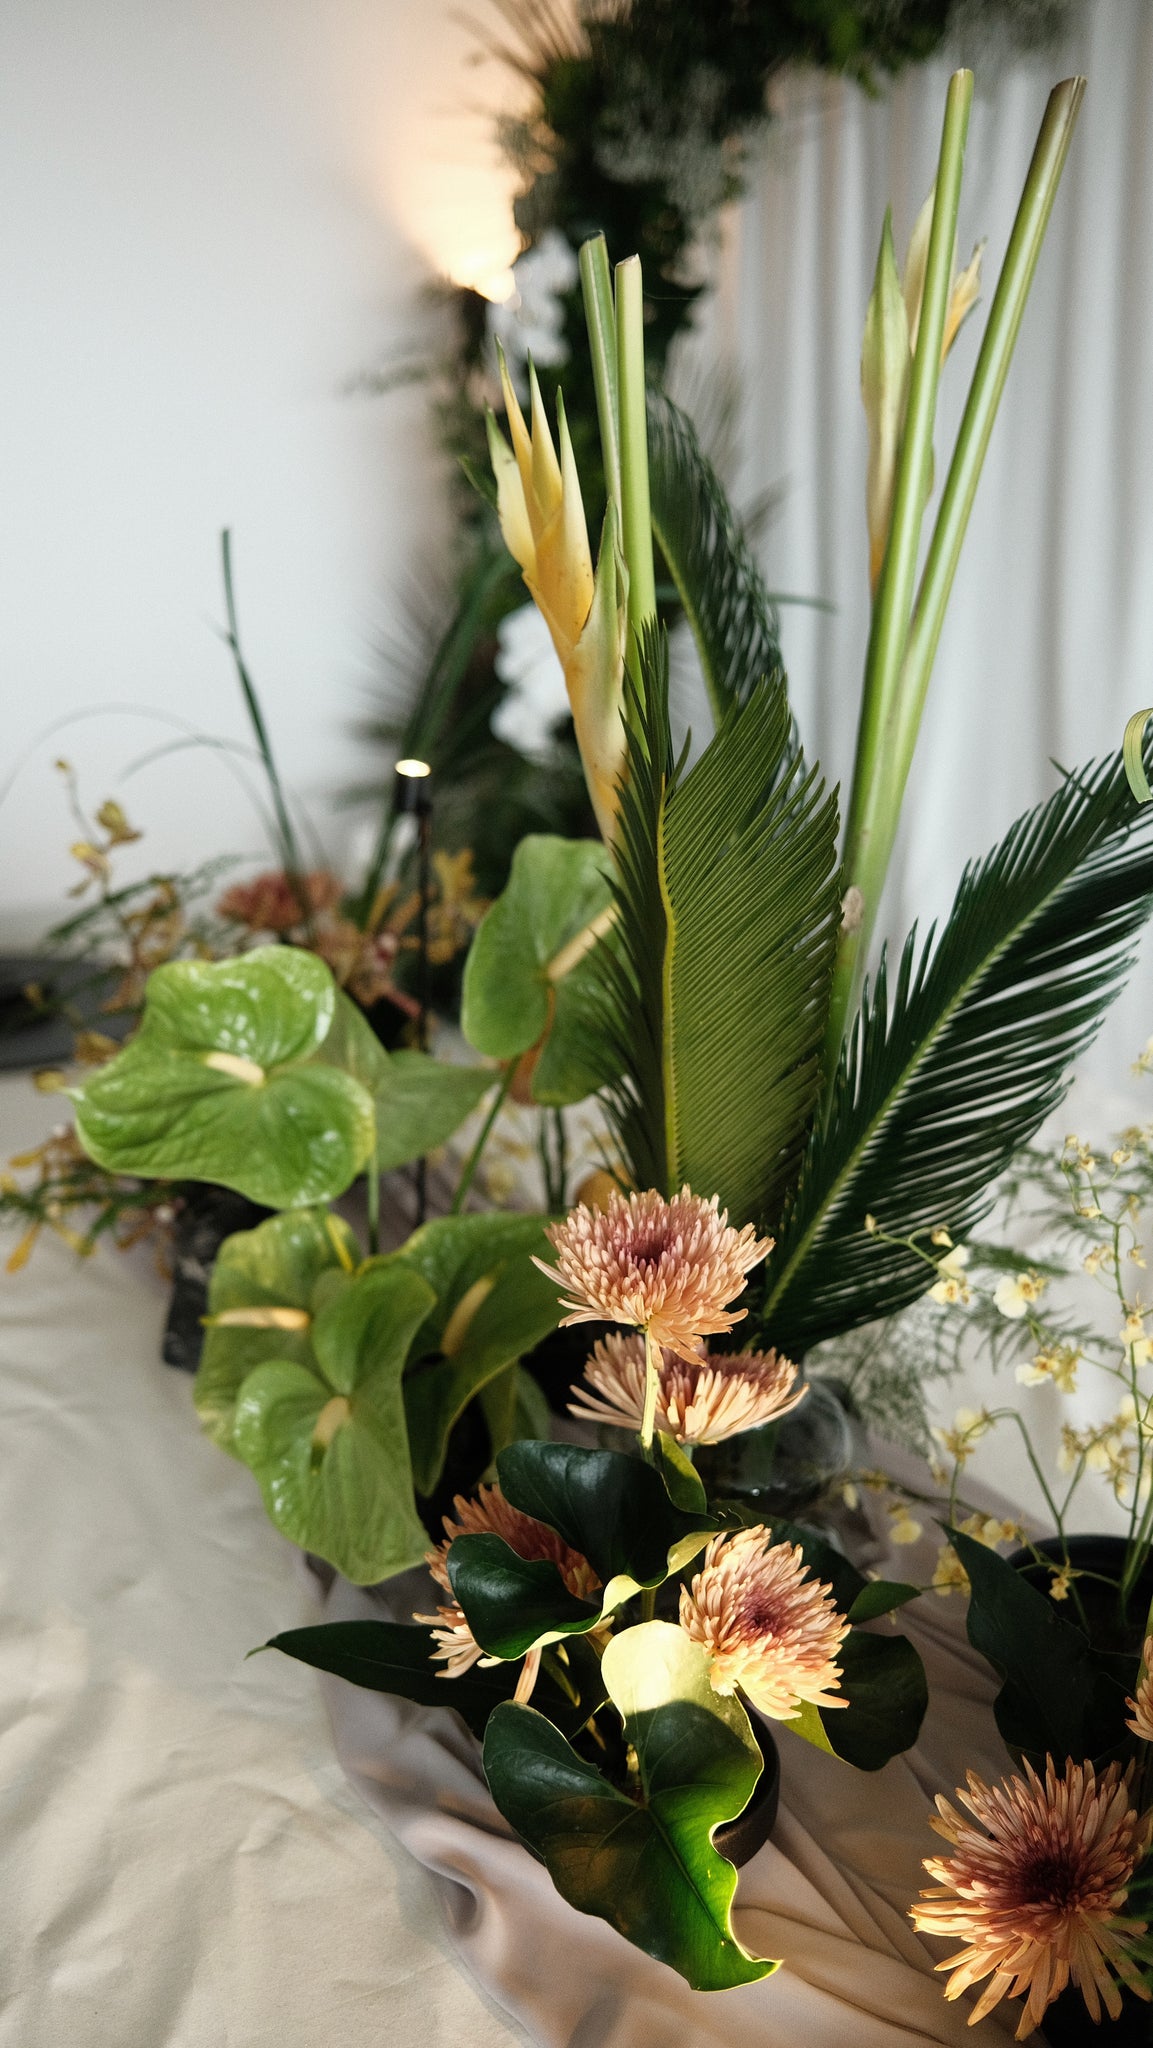 Echevaria.co Studio Launch Event Botanical Floral Arrangements Table Centrepieces 08